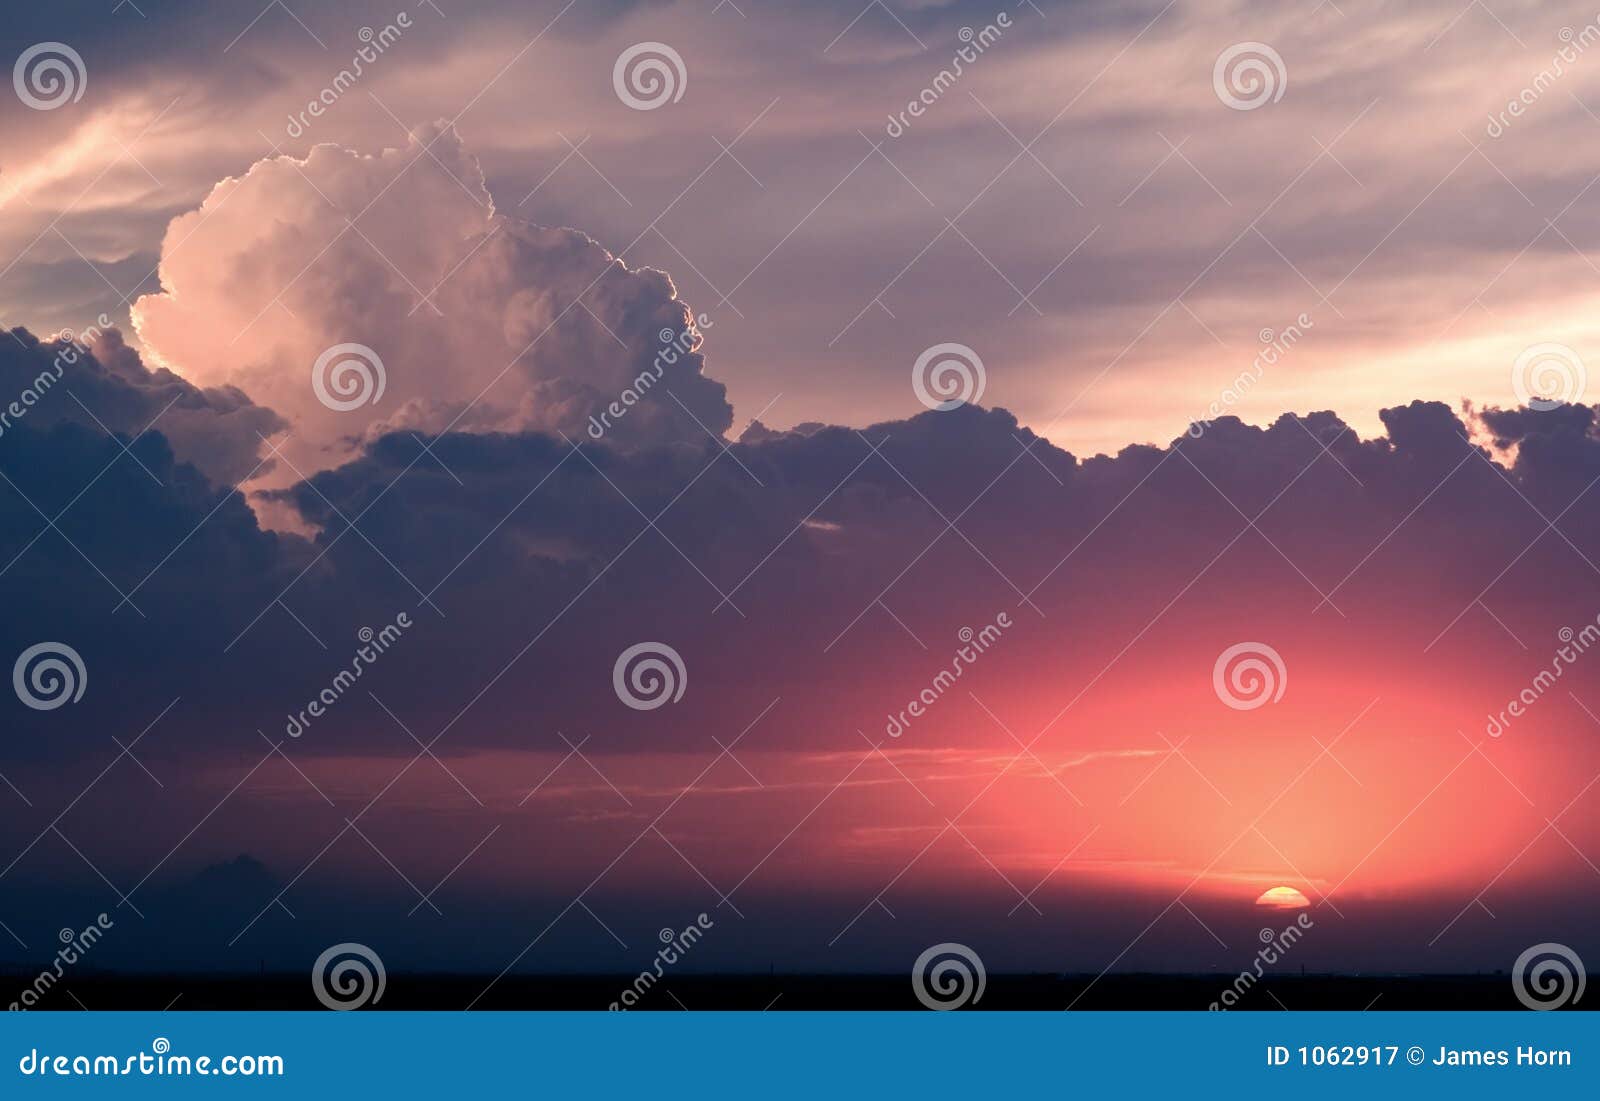 cumulus sunset